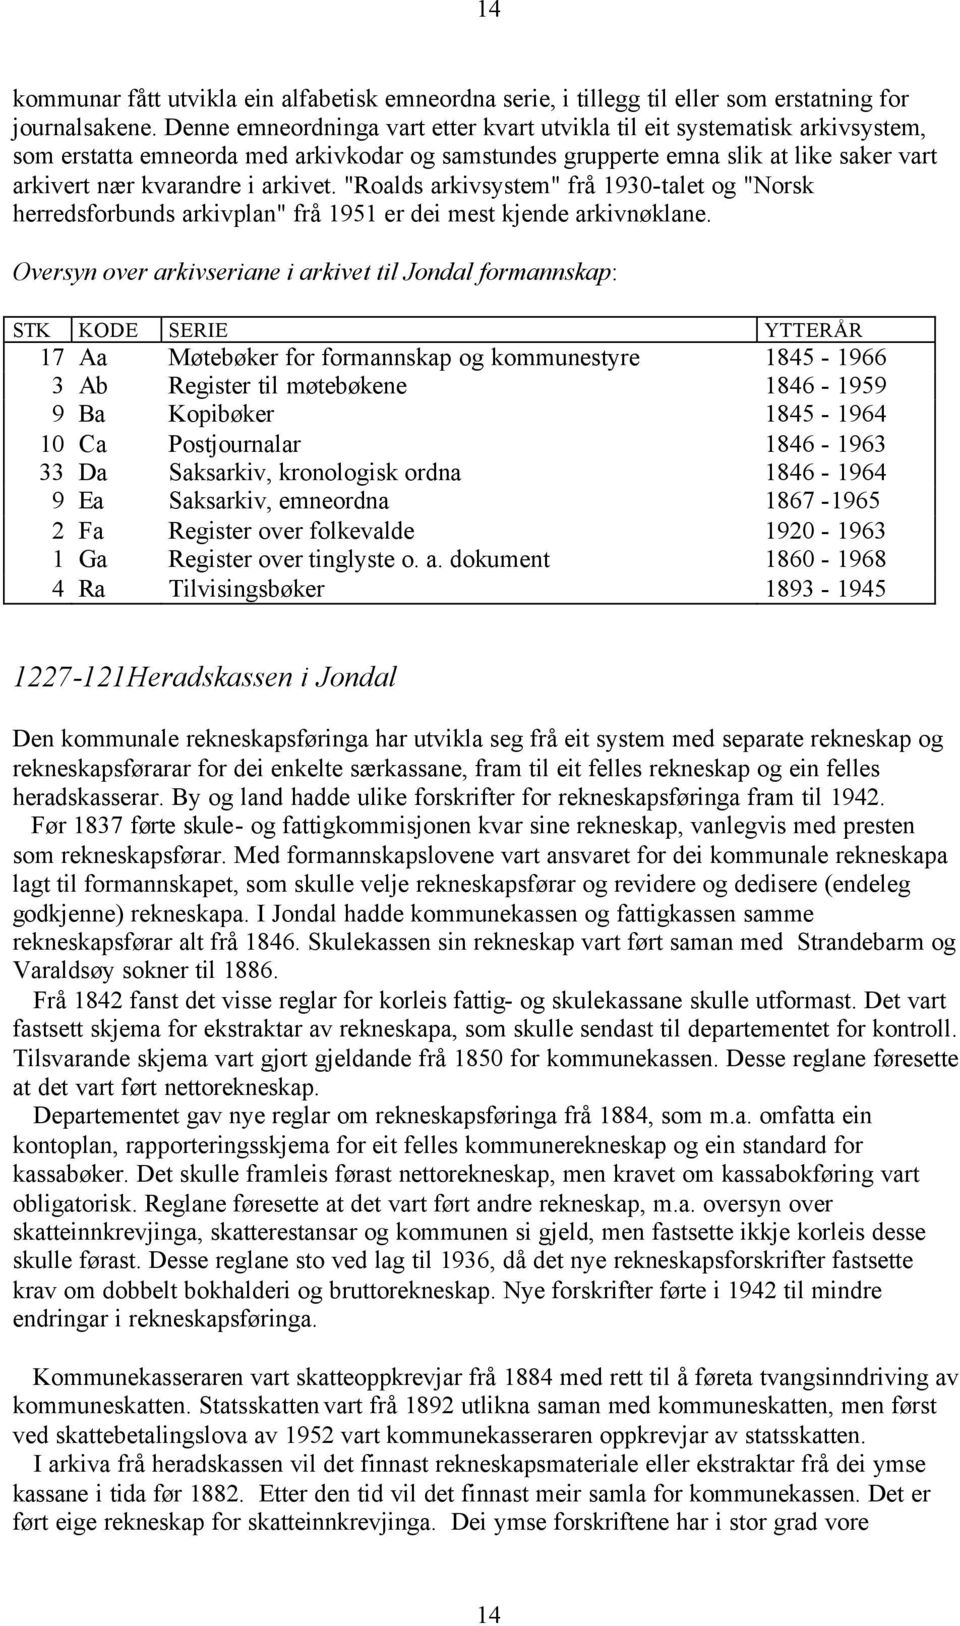 "Roalds arkivsystem" frå 1930-talet og "Norsk herredsforbunds arkivplan" frå 1951 er dei mest kjende arkivnøklane.